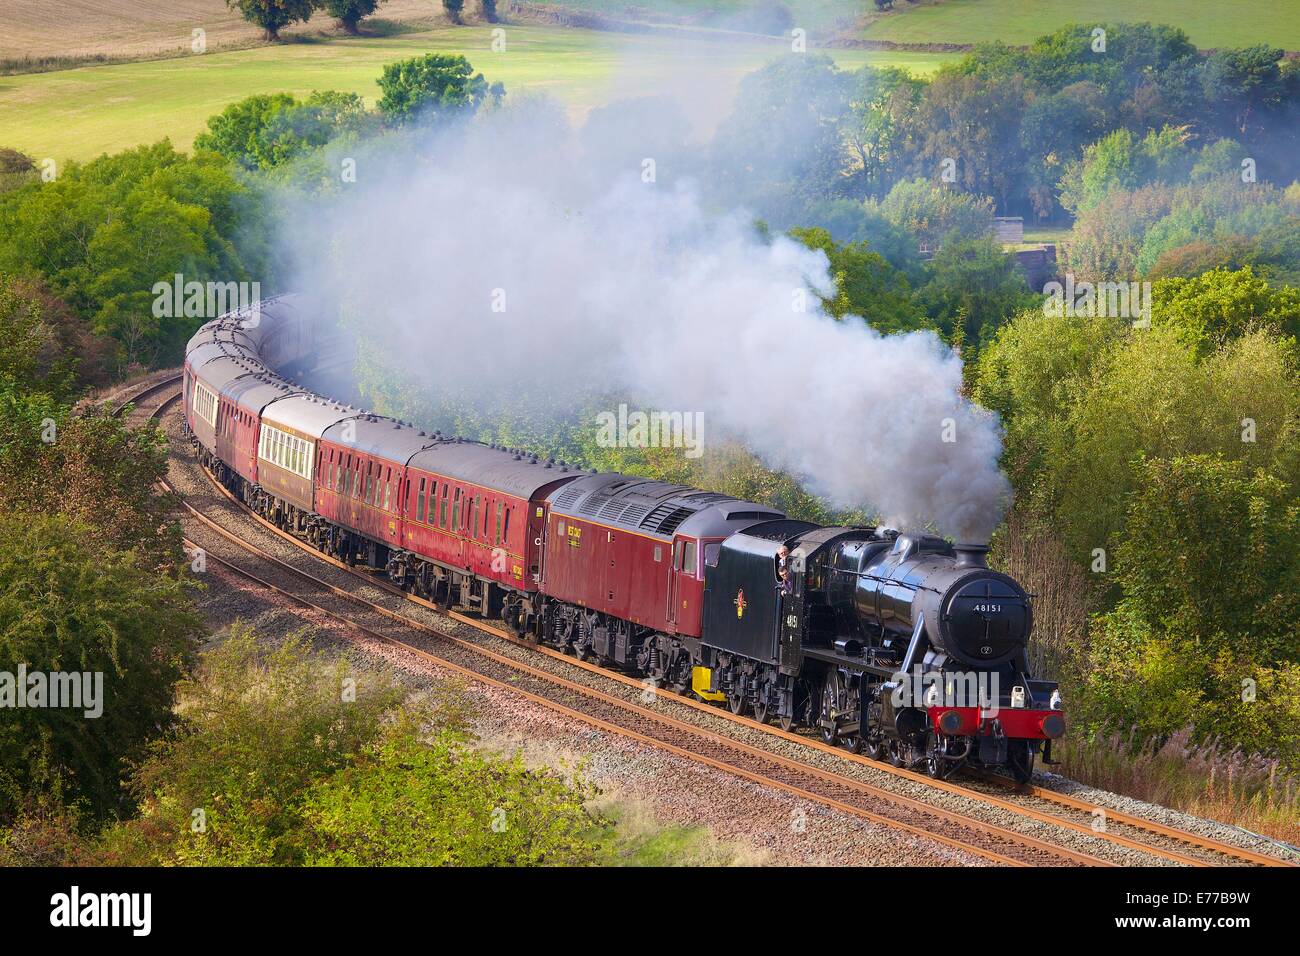 LMS Classe Stanier 8F 48151, près de train à vapeur de la ferme du Bois bas Baron Armathwaite Eden Valley, Cumbria, England, UK. Banque D'Images